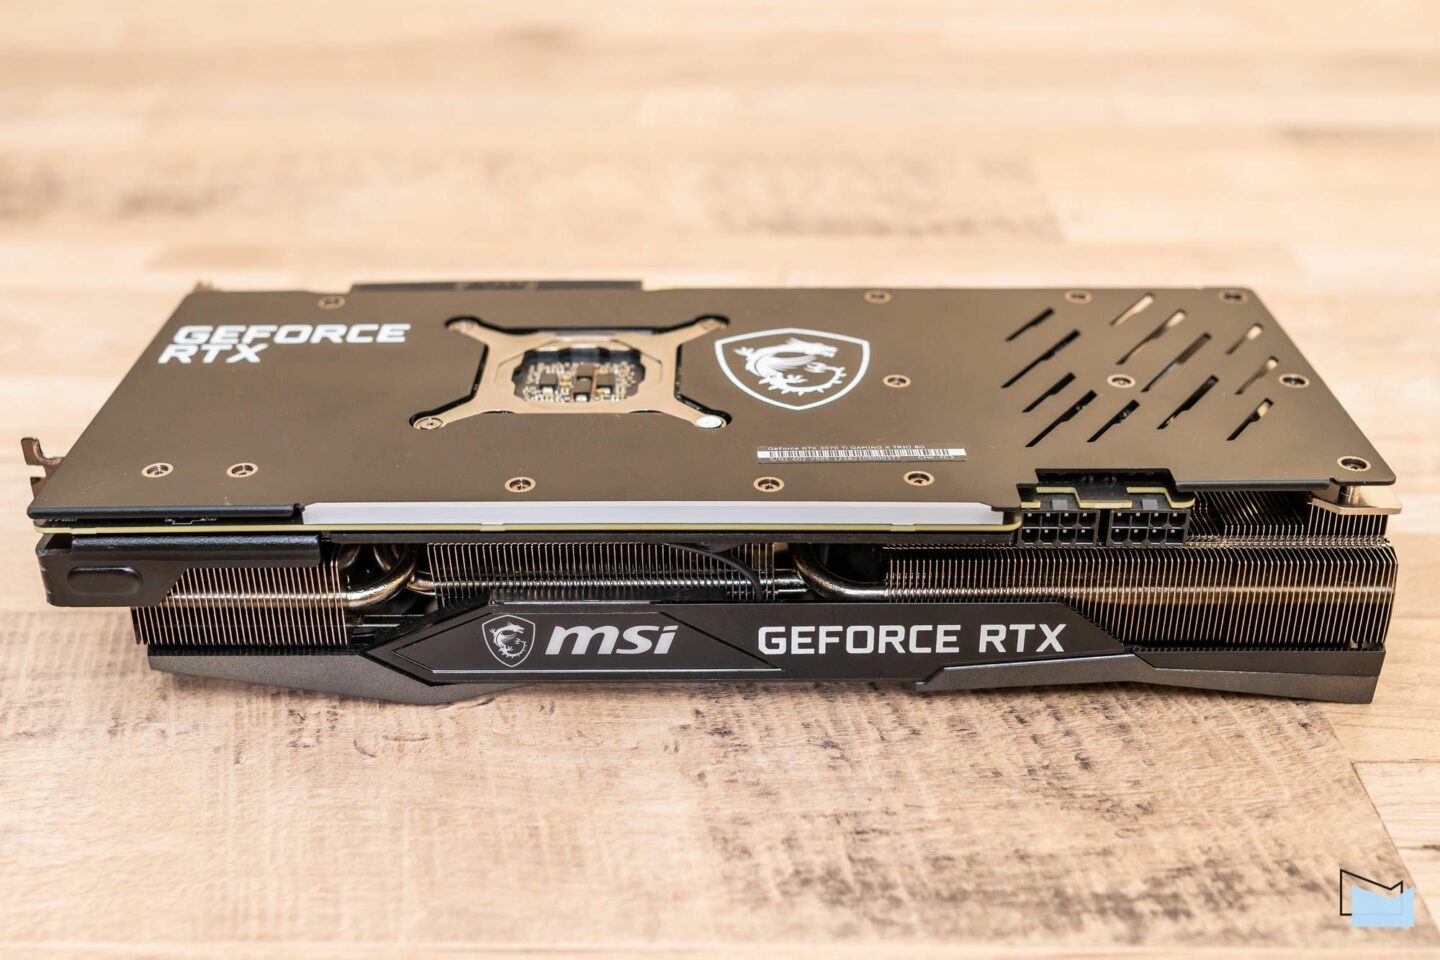 MSI GeForce RTX 3070 Ti GAMING X TRIO 8G: граємо в режимі 1440p